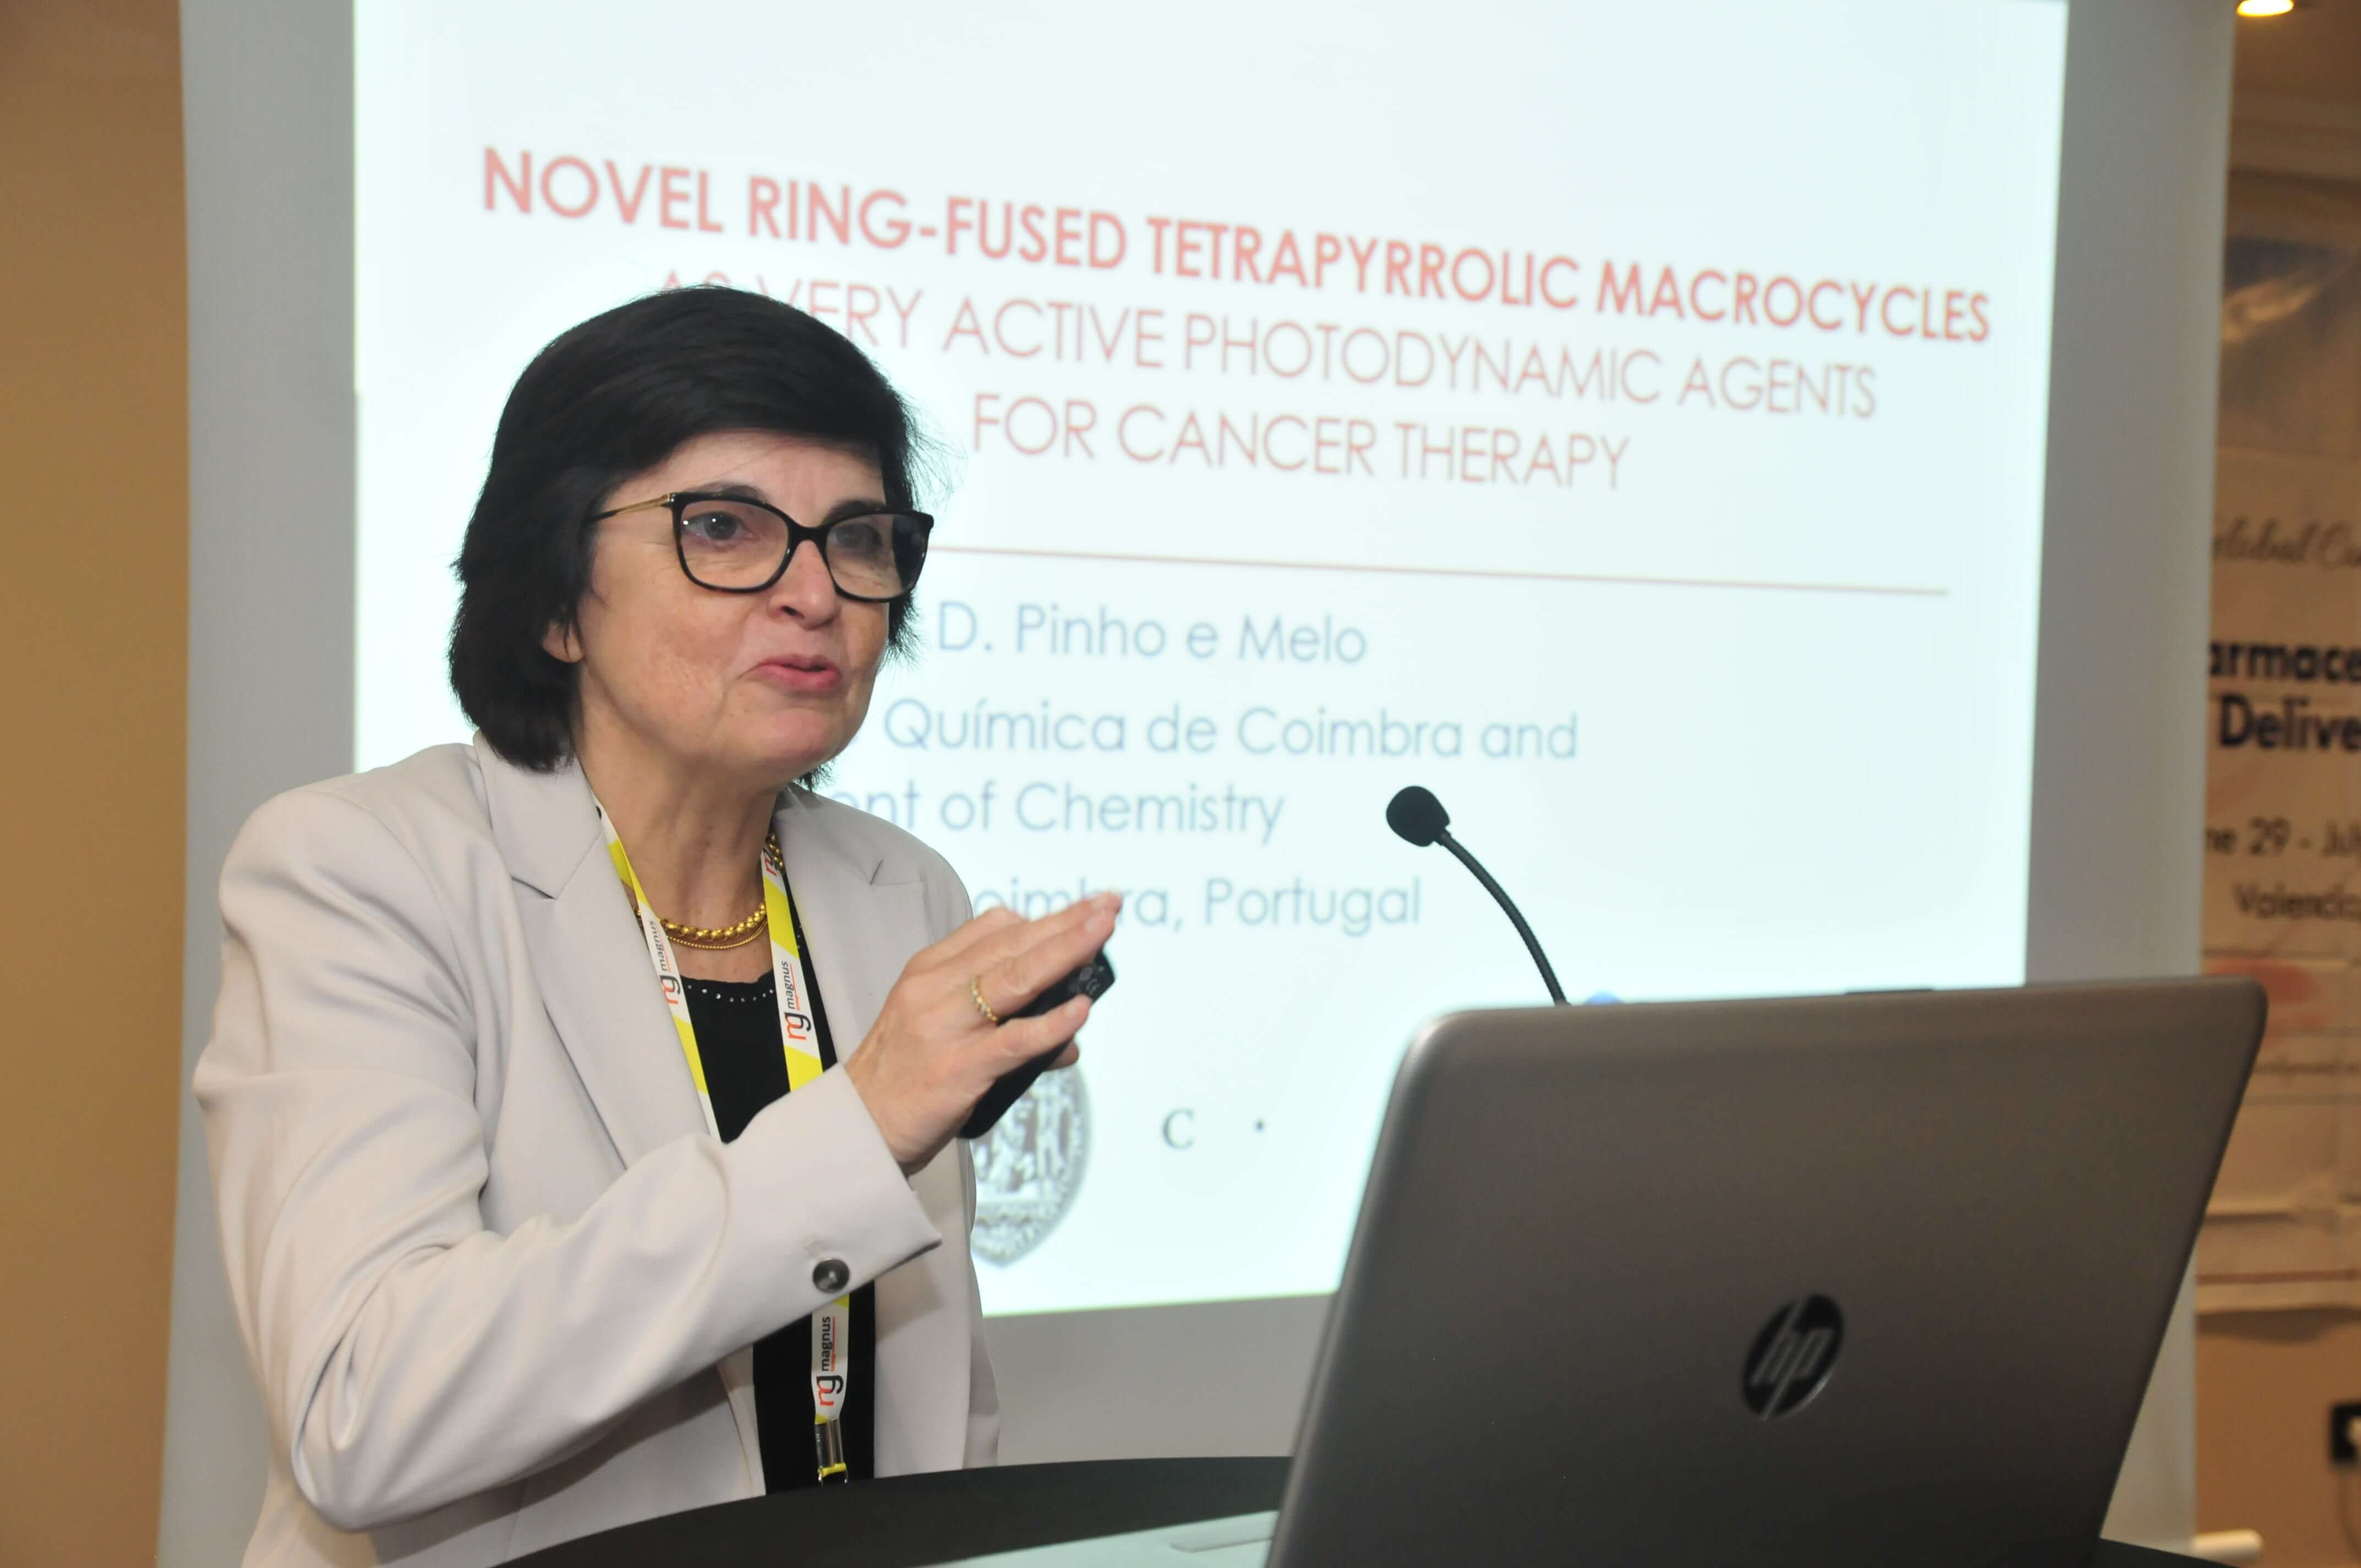 Leading speakers for Biotechnology meetings-Teresa M. V. D. Pinho E Melo